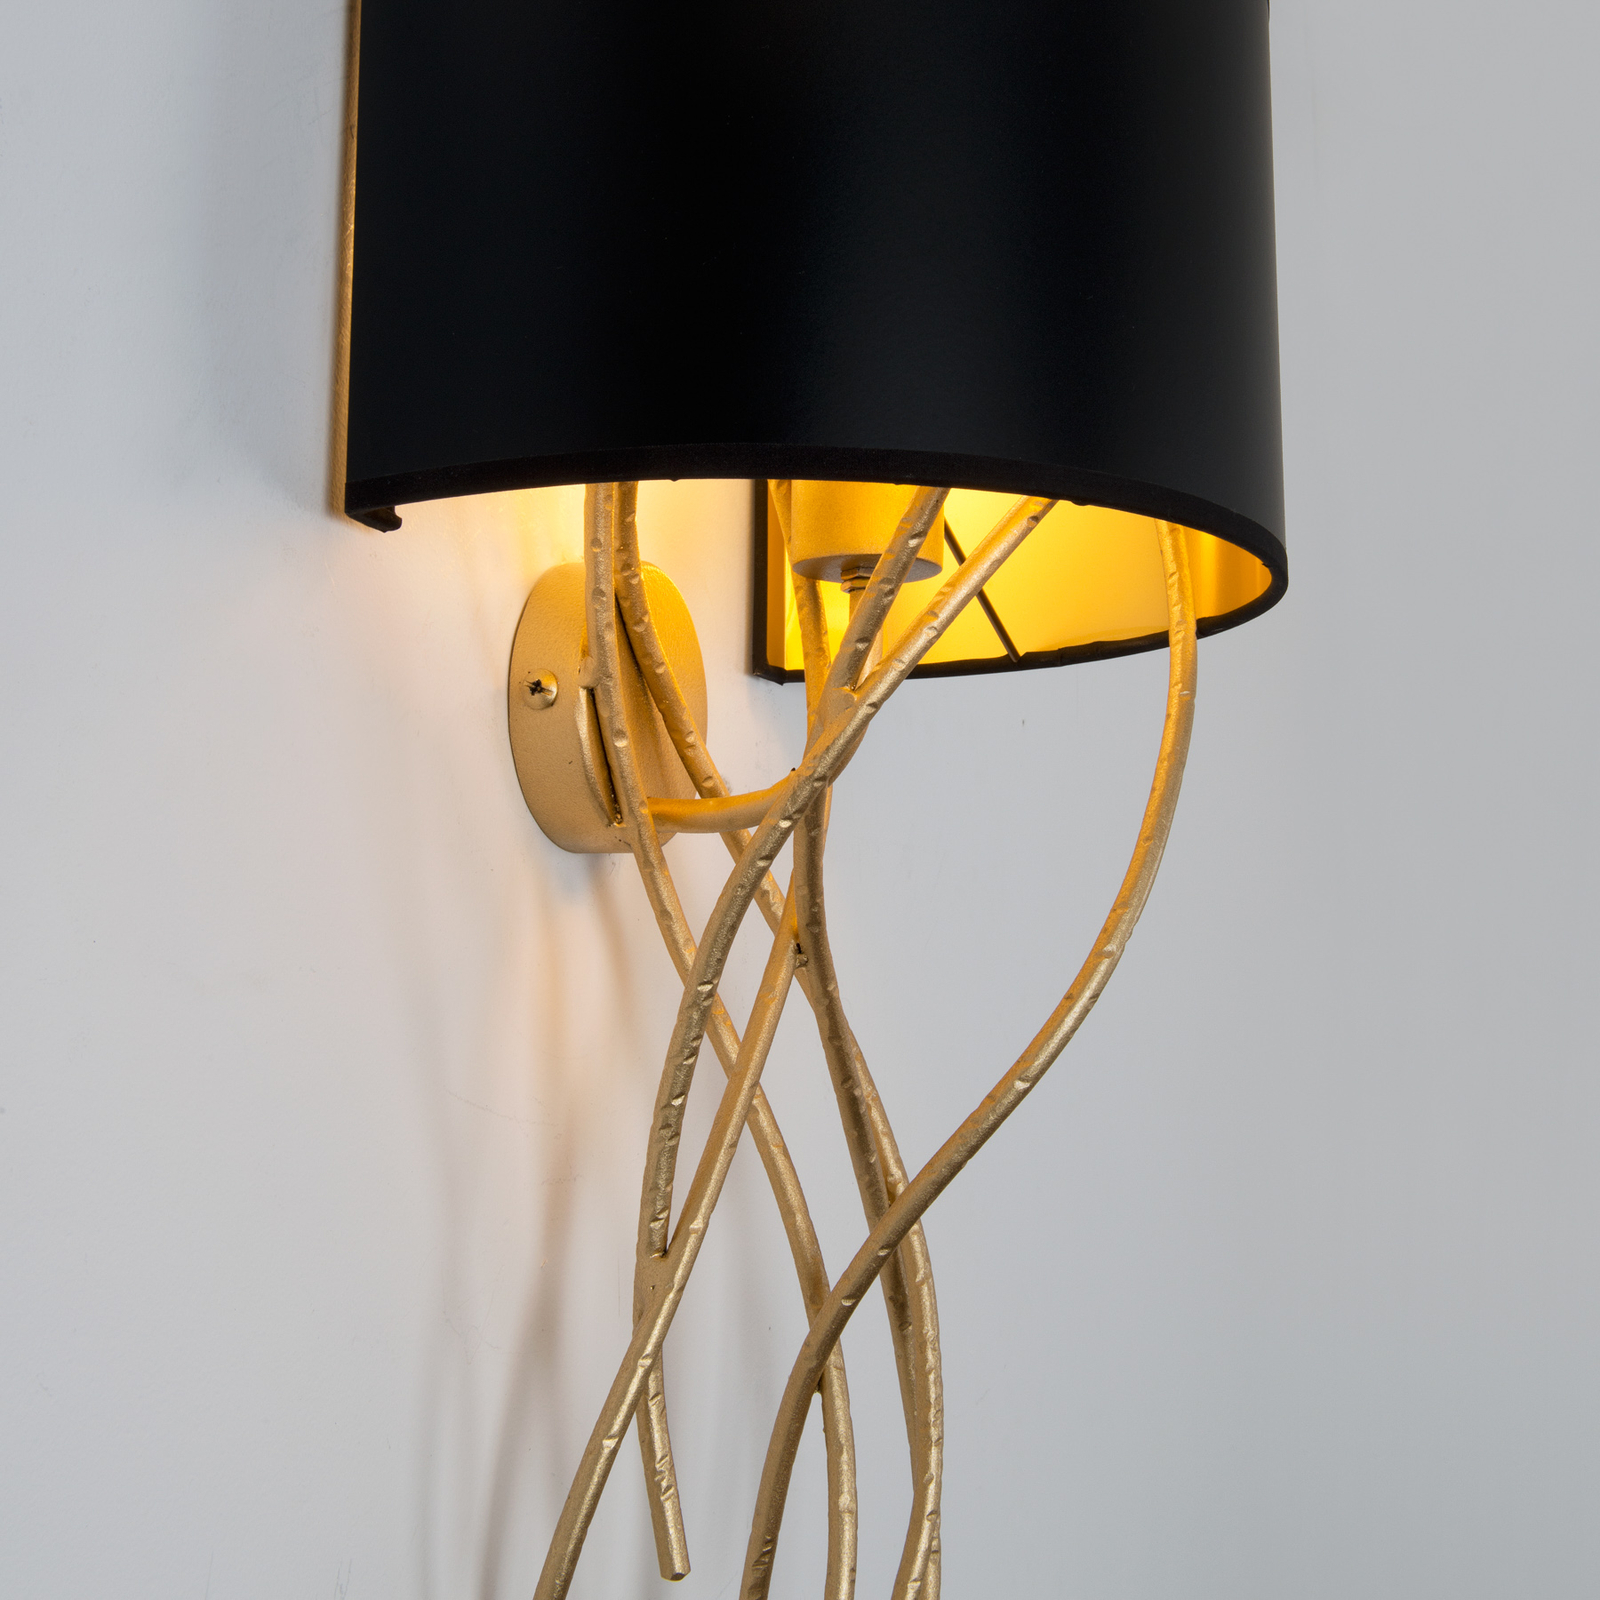 Elba Corto zidna svjetiljka, jedna žarulja, crna/zlatna